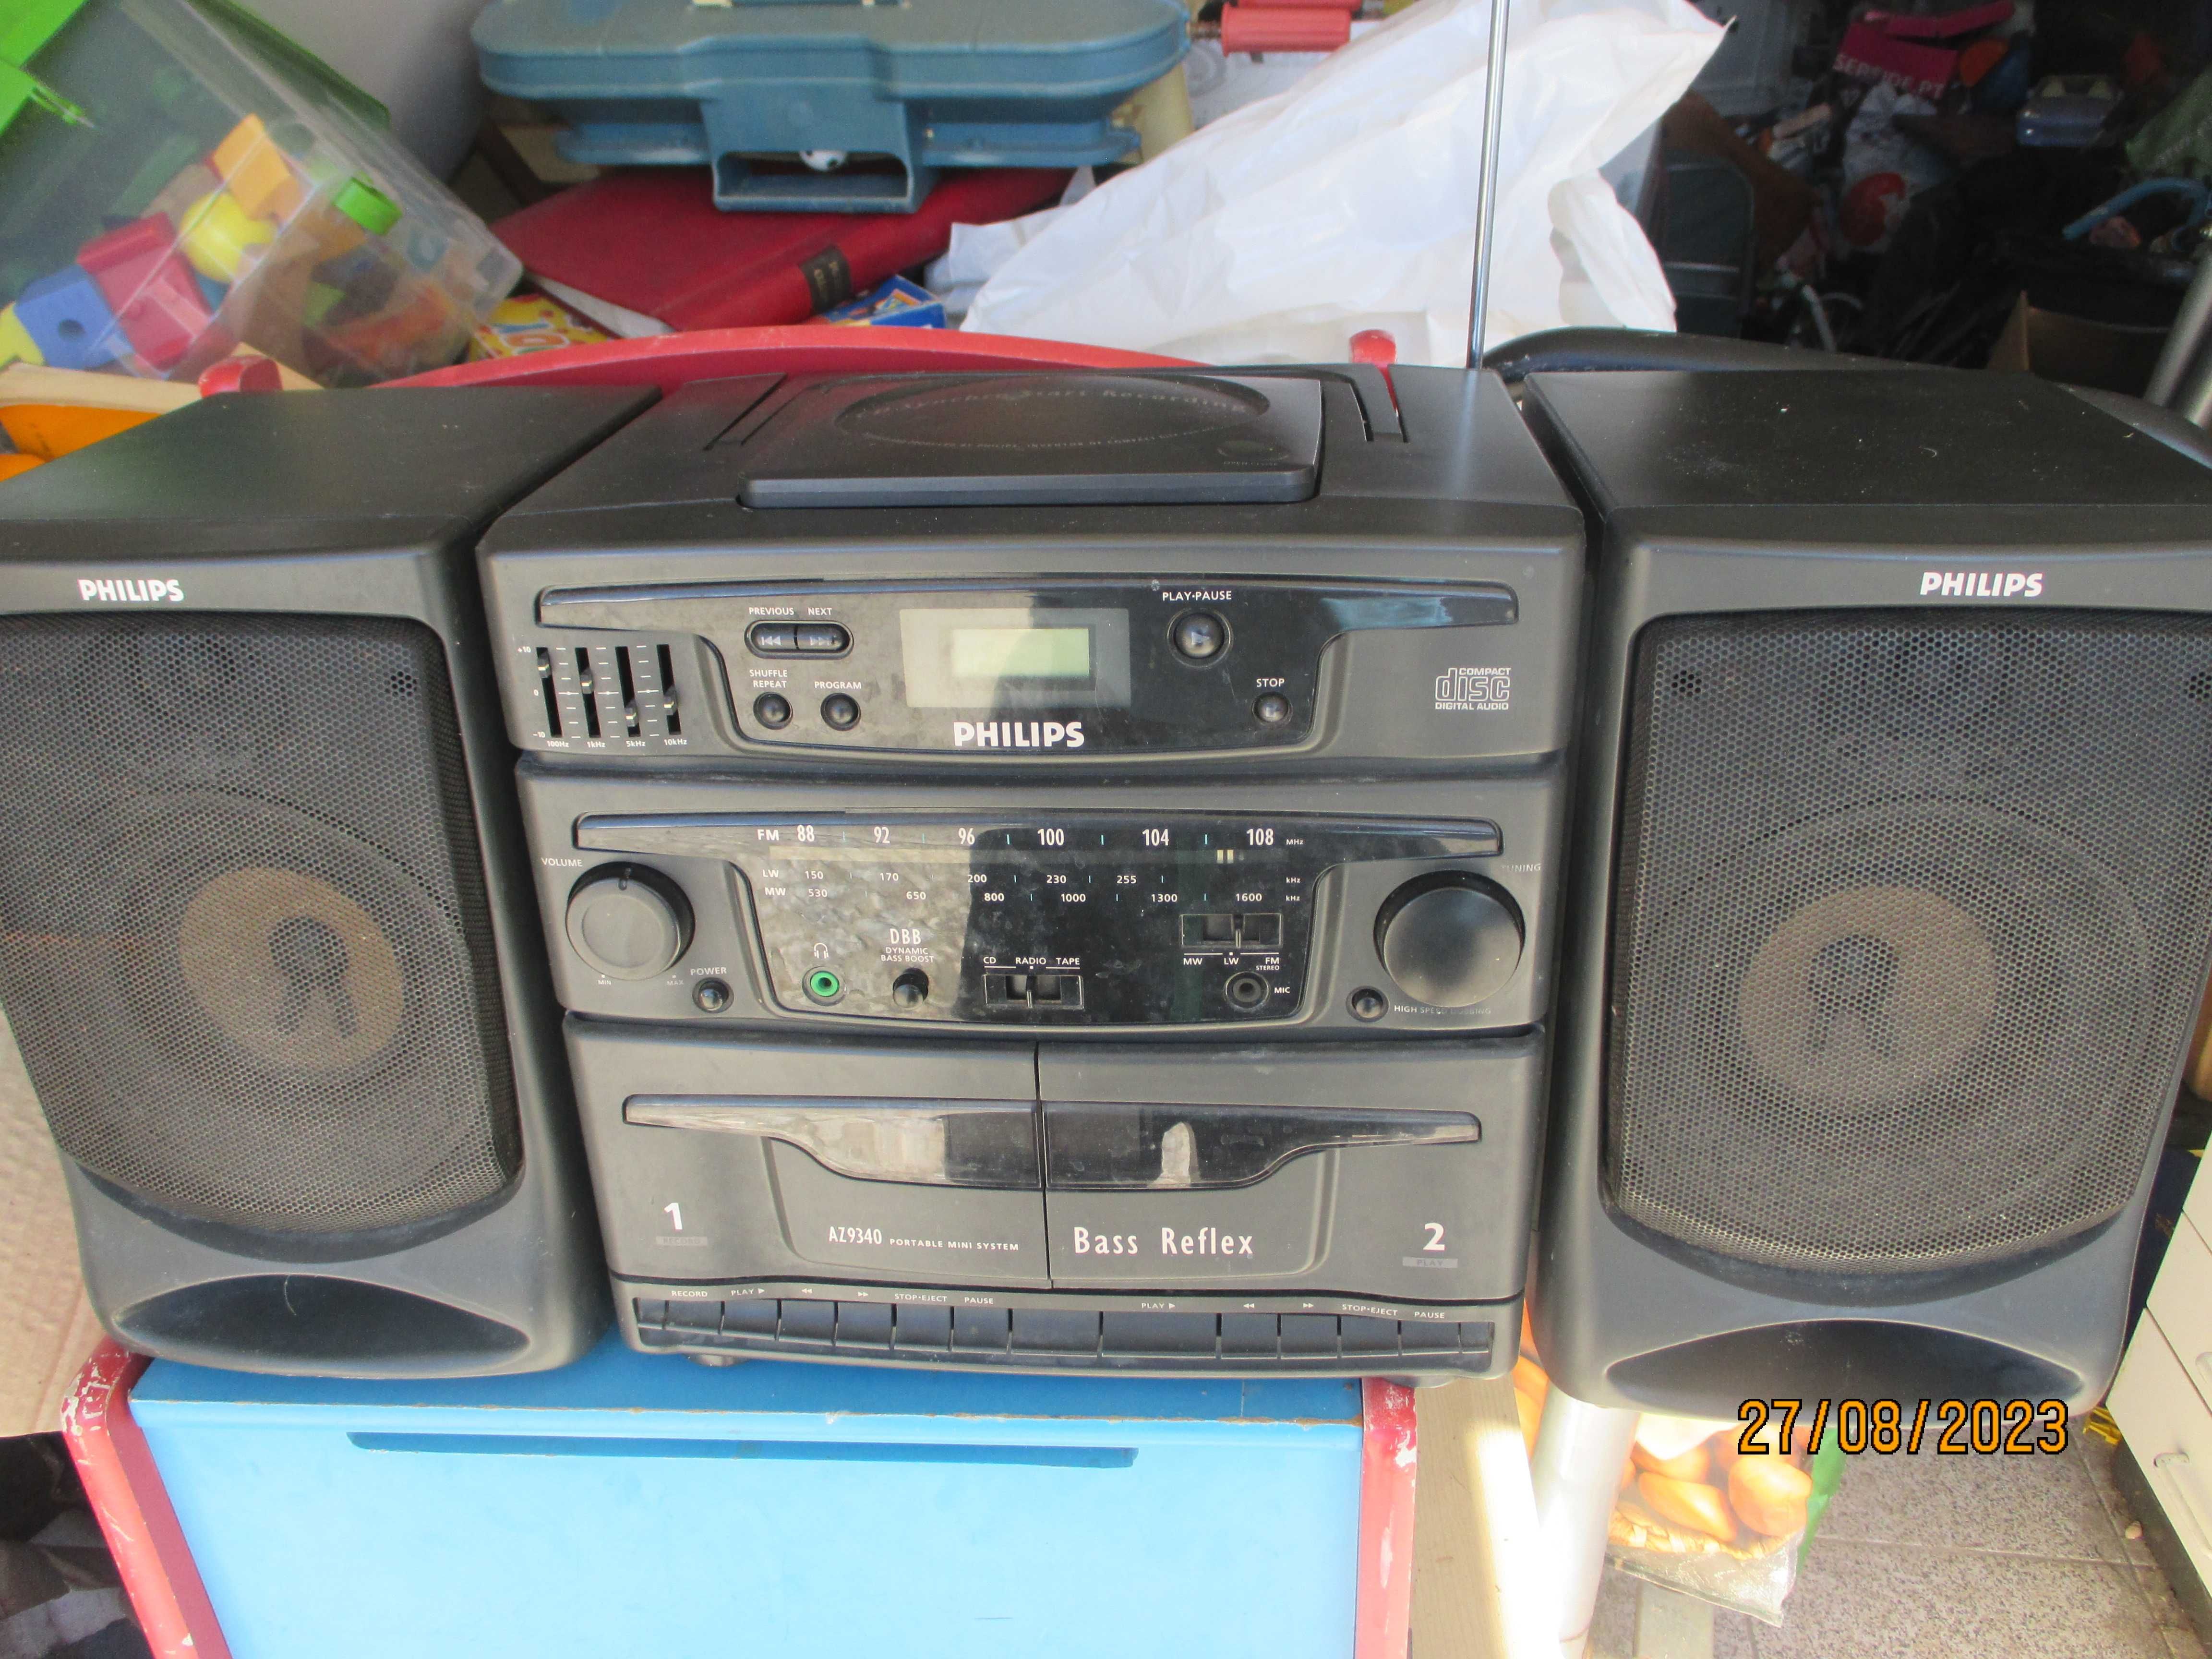 Aparelhagem antiga audio Philips AZ 9340 - para reparação